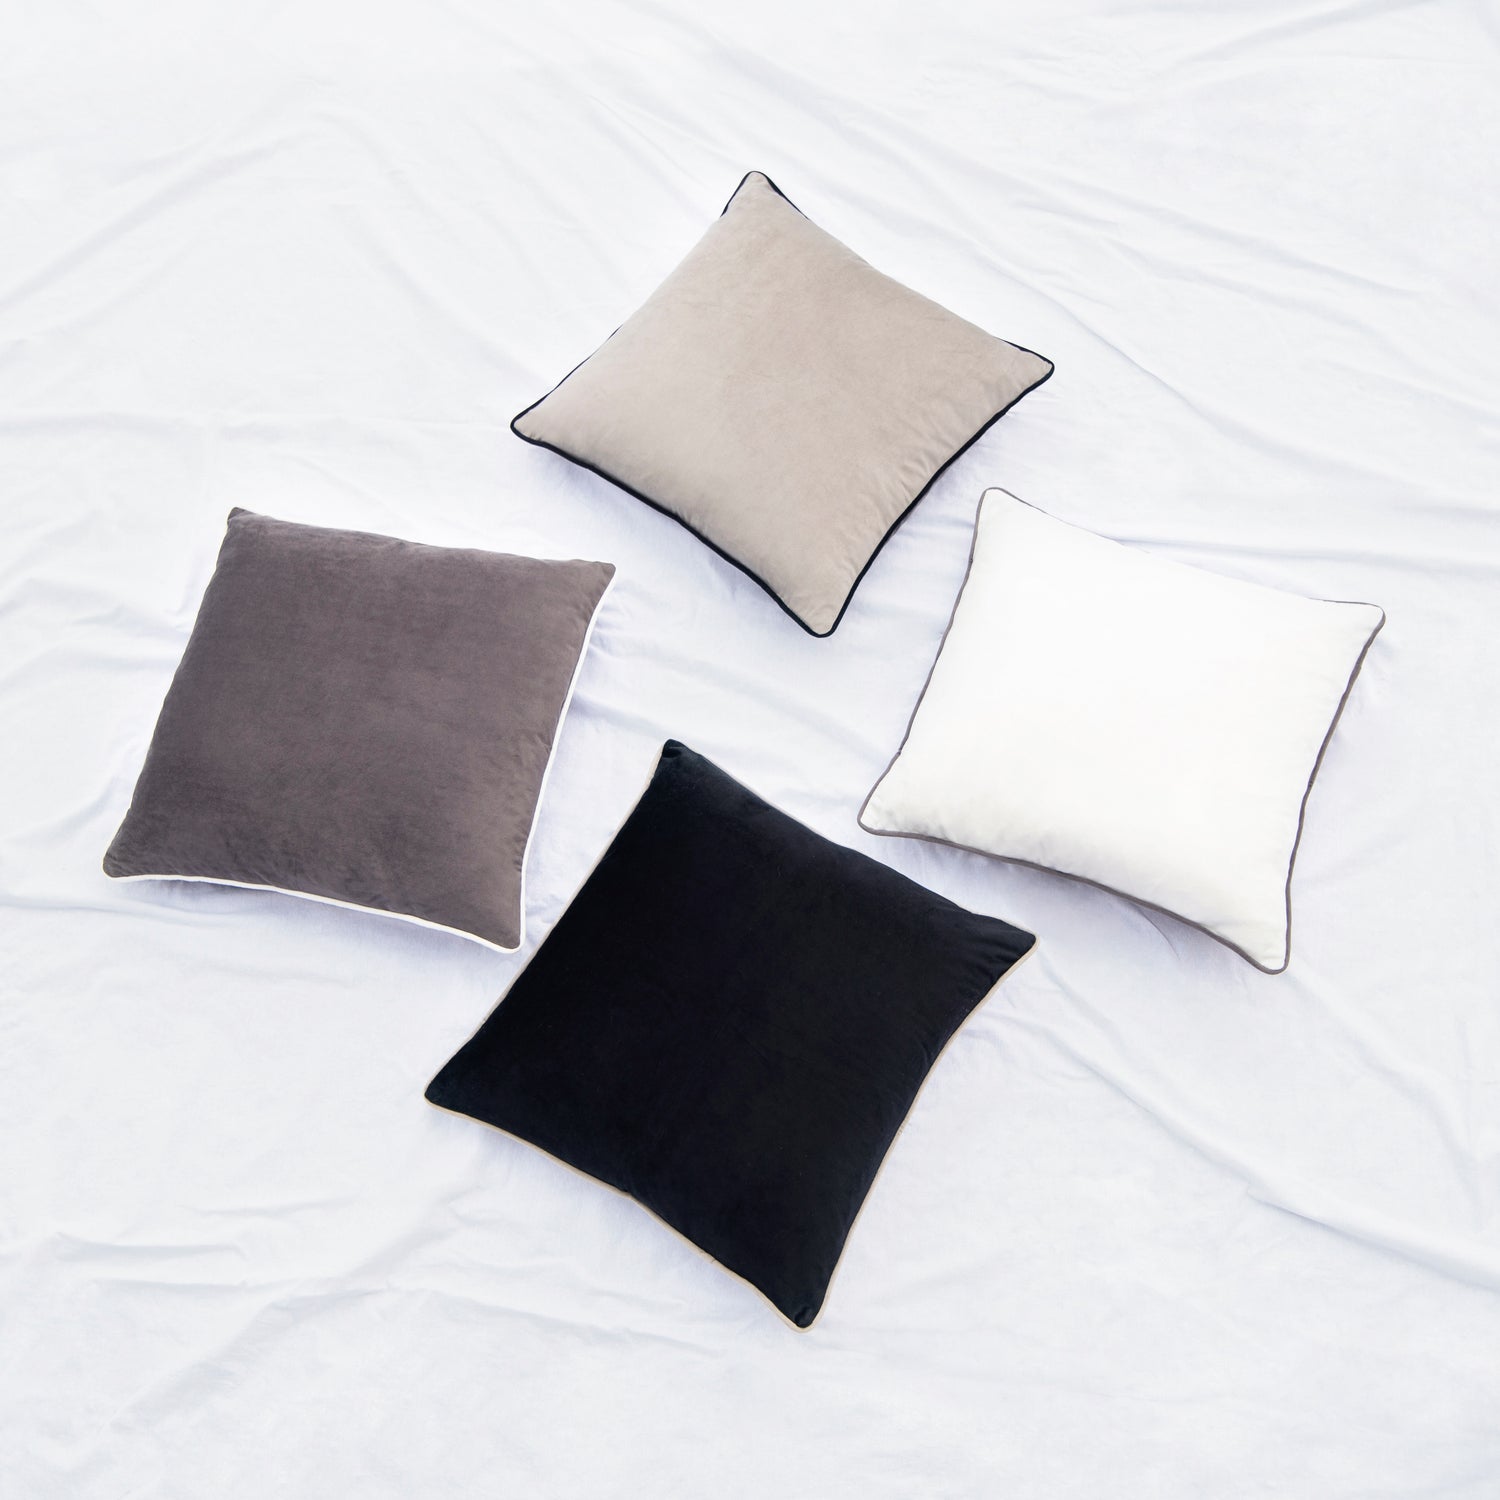 Monteverde Pillows (4-Pack) - Black/White